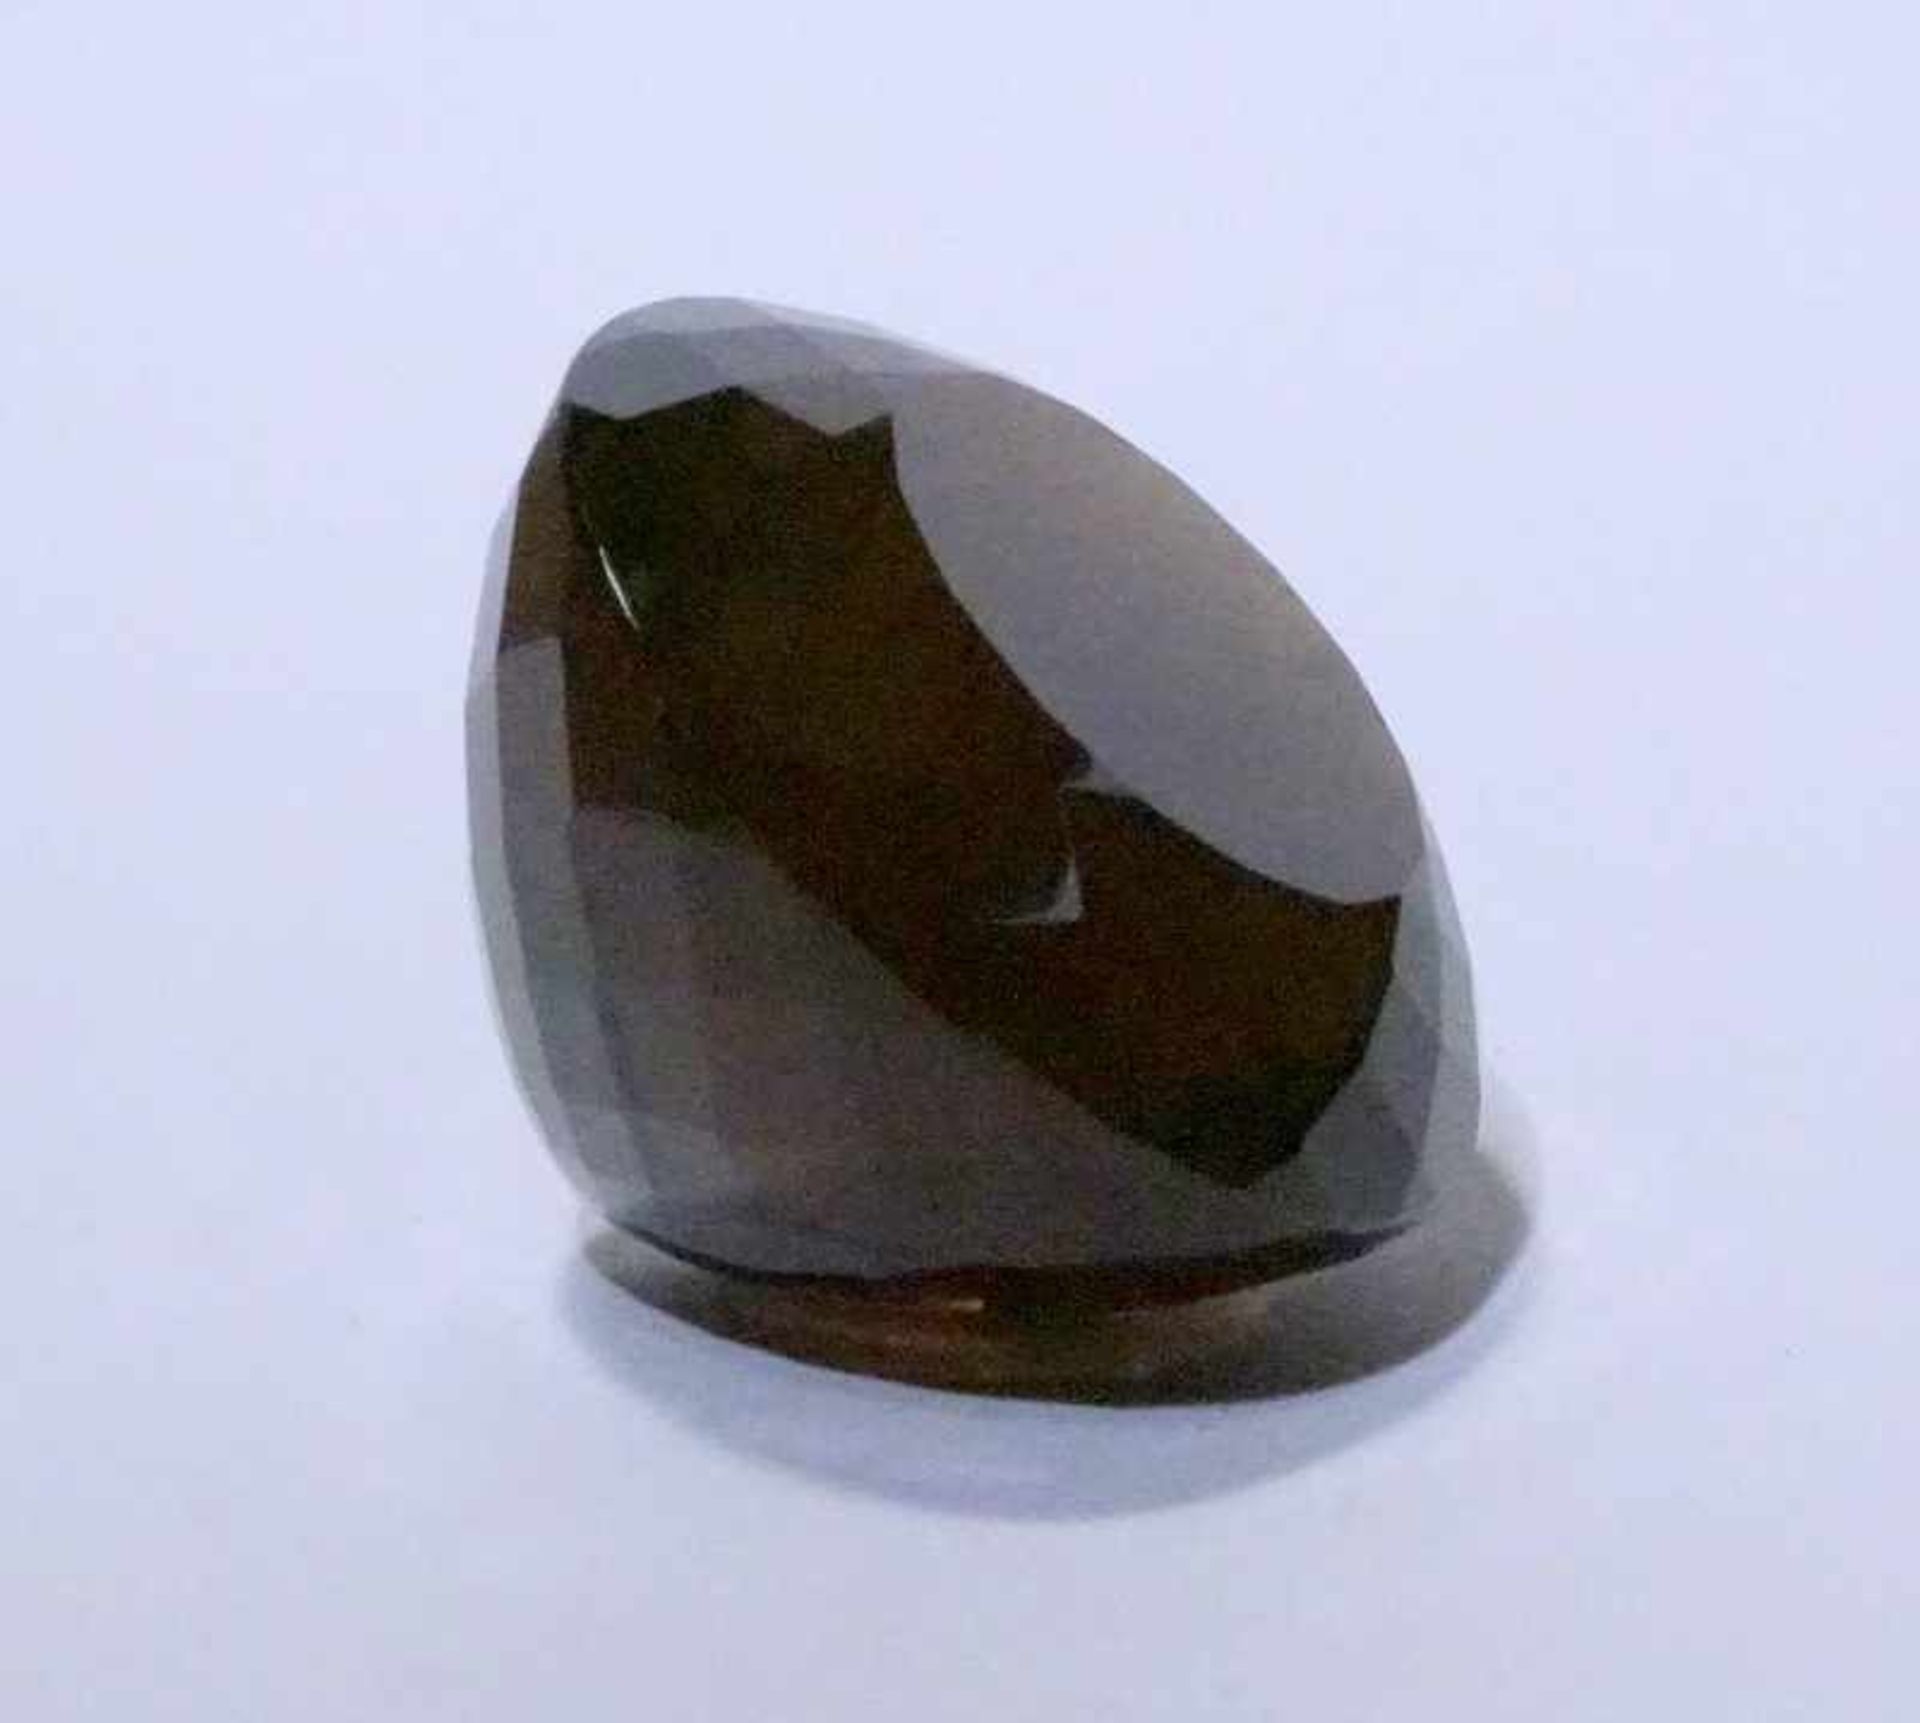 Riesiger Rauchquartz mit Diamantschliff insges. 1290 Karatdunkelbraune halbtransparente Färbung, 6,8